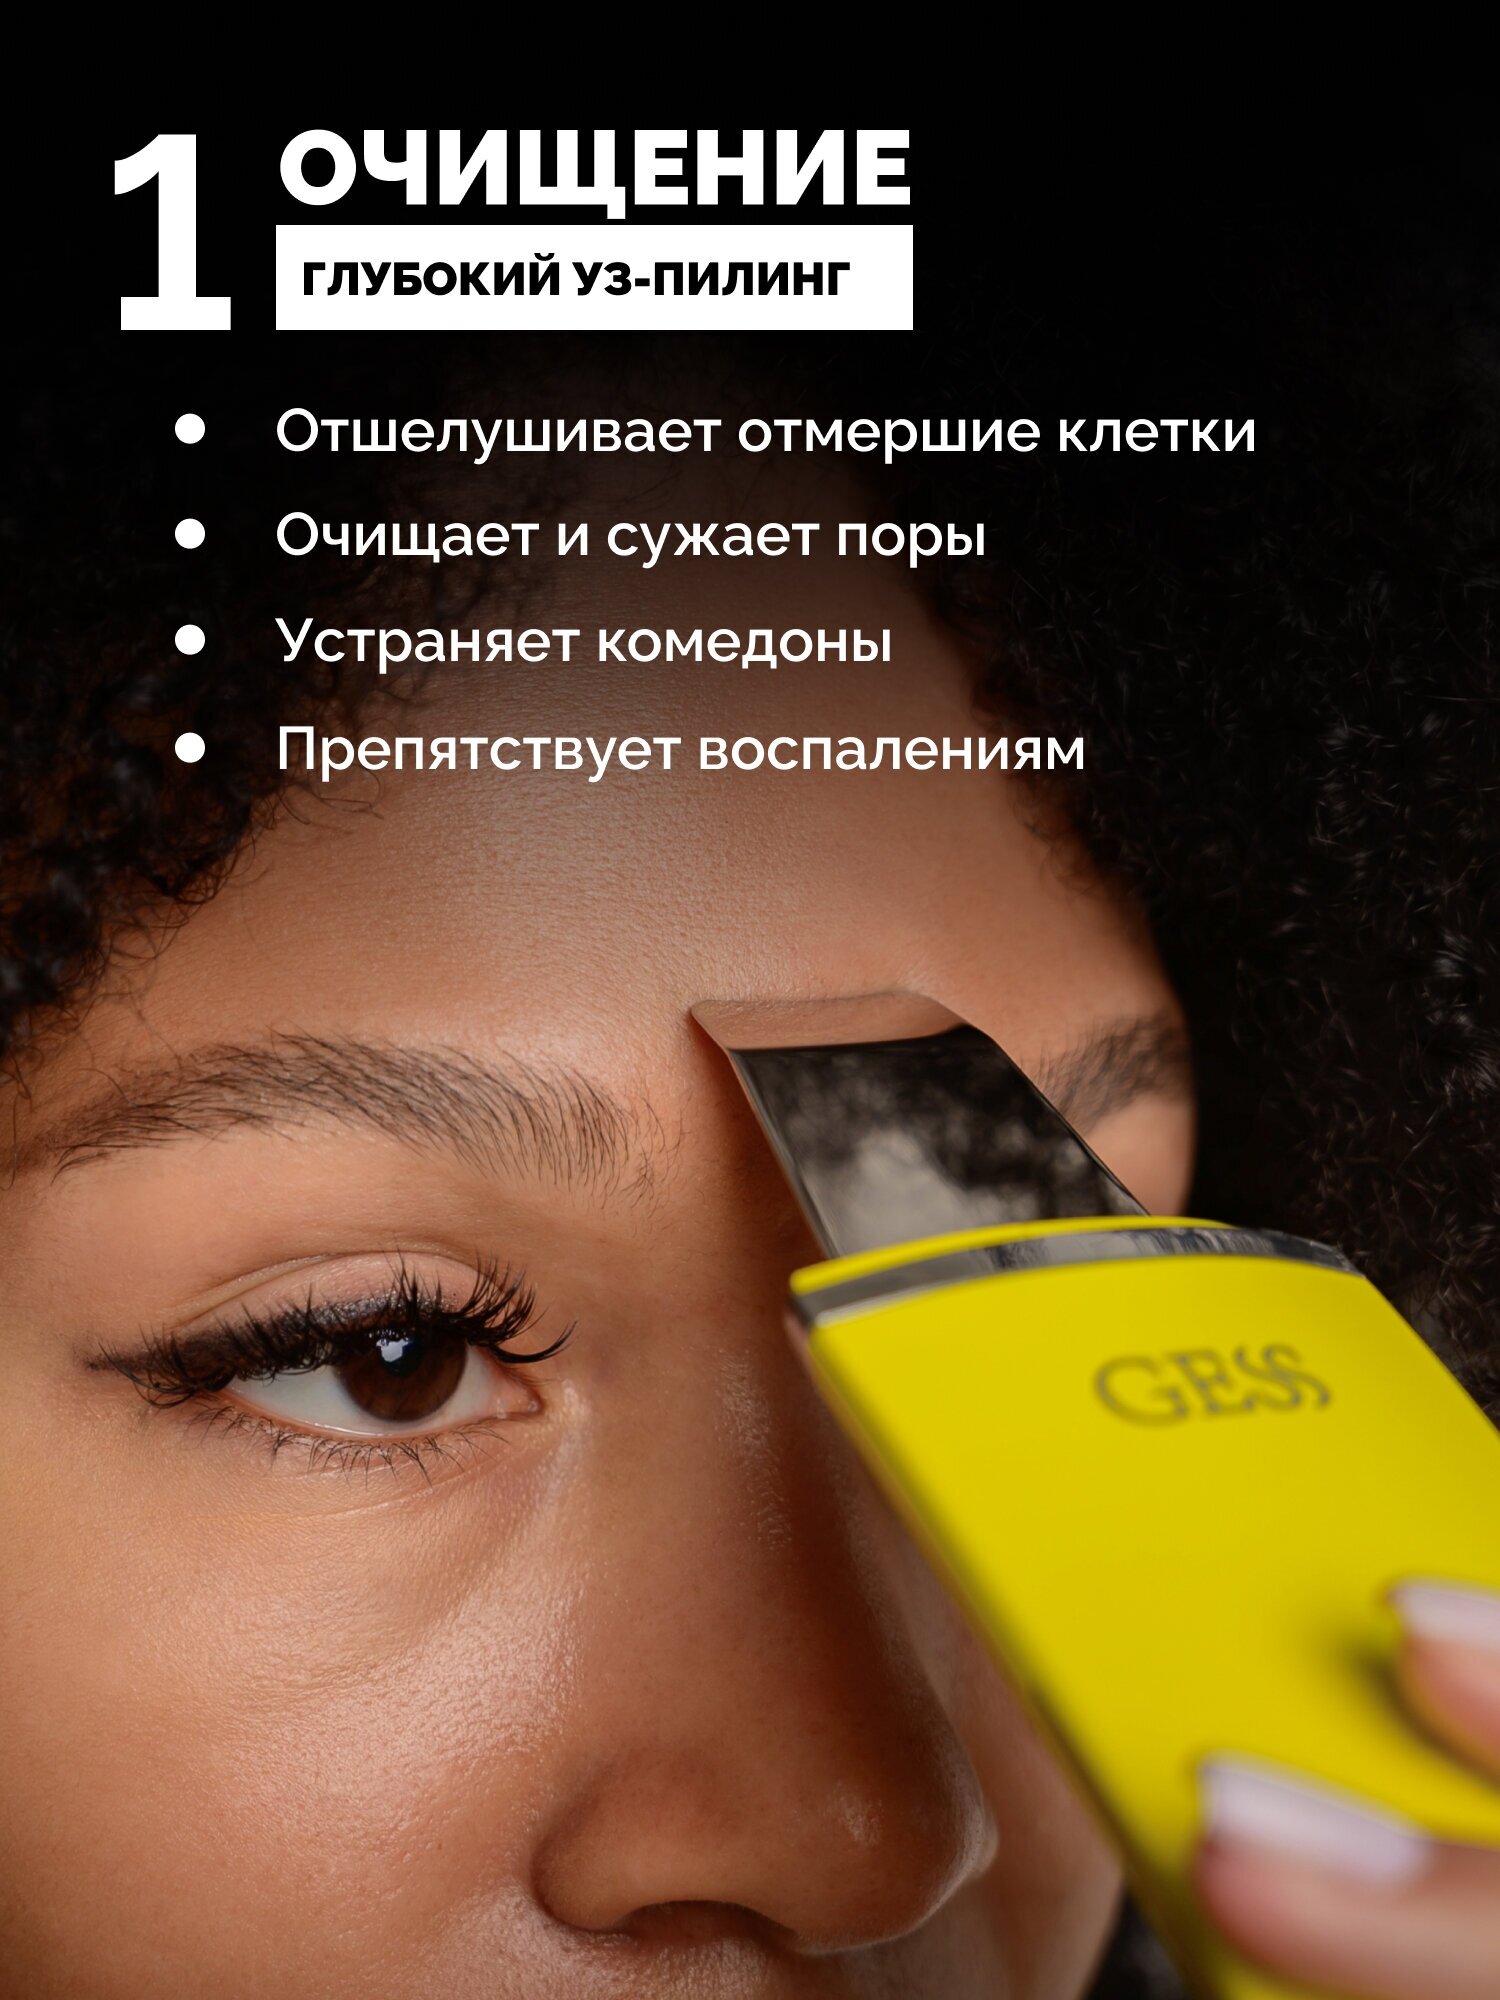 Ультразвуковая чистка Прибор для ультразвуковой чистки лица Gess (GESS-147) - фото №2